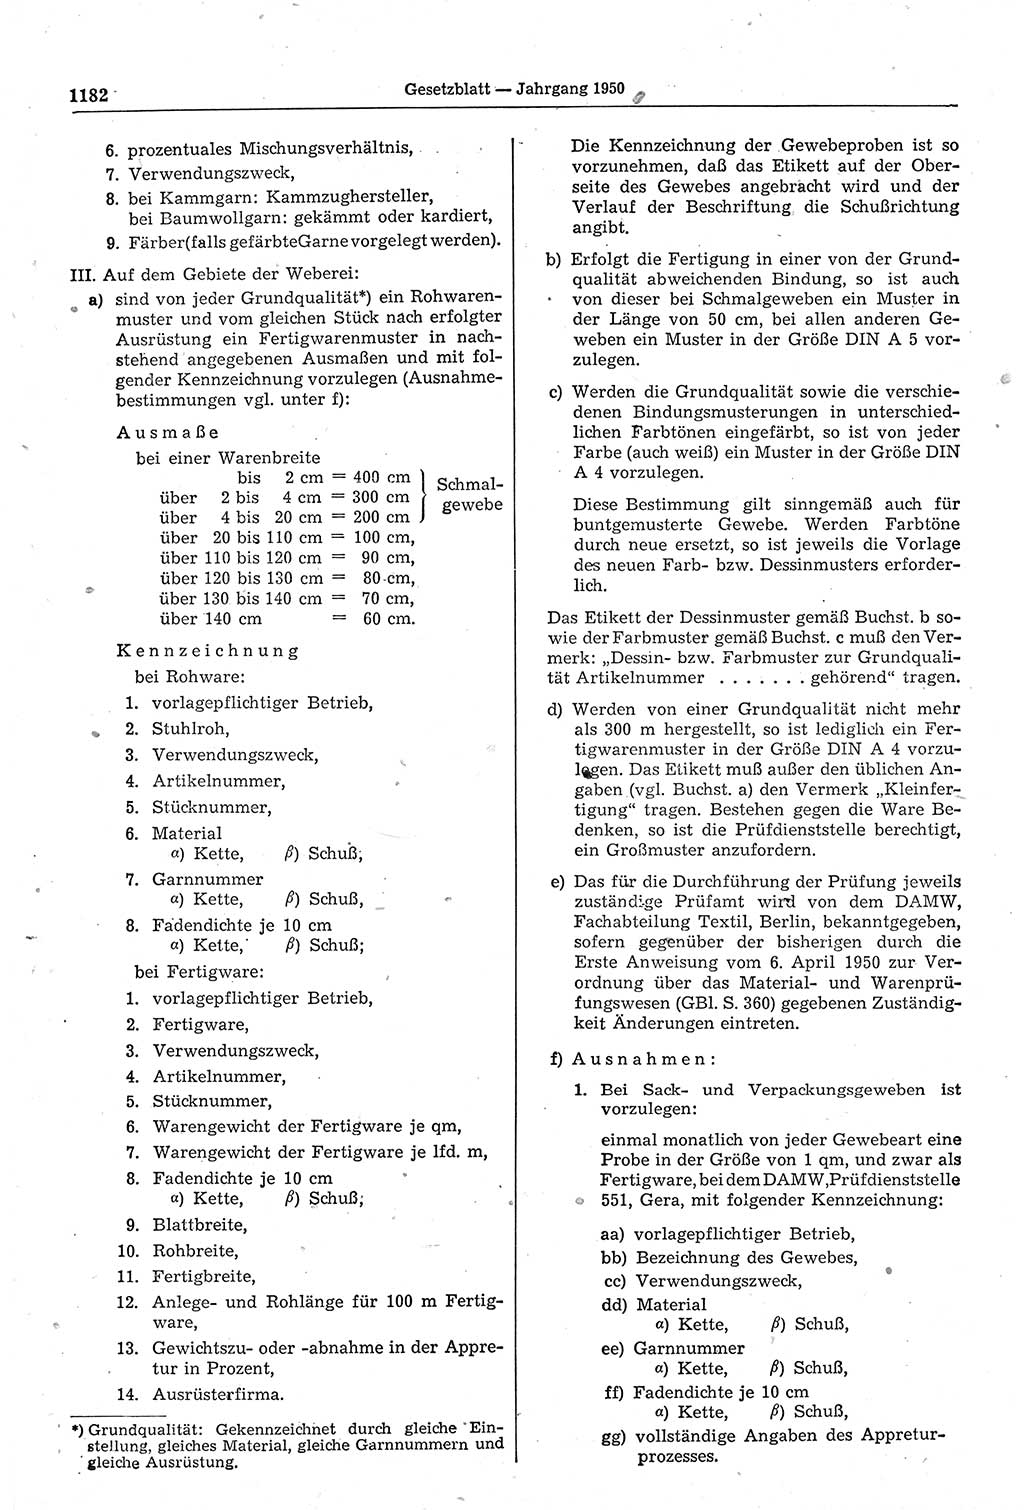 Gesetzblatt (GBl.) der Deutschen Demokratischen Republik (DDR) 1950, Seite 1182 (GBl. DDR 1950, S. 1182)